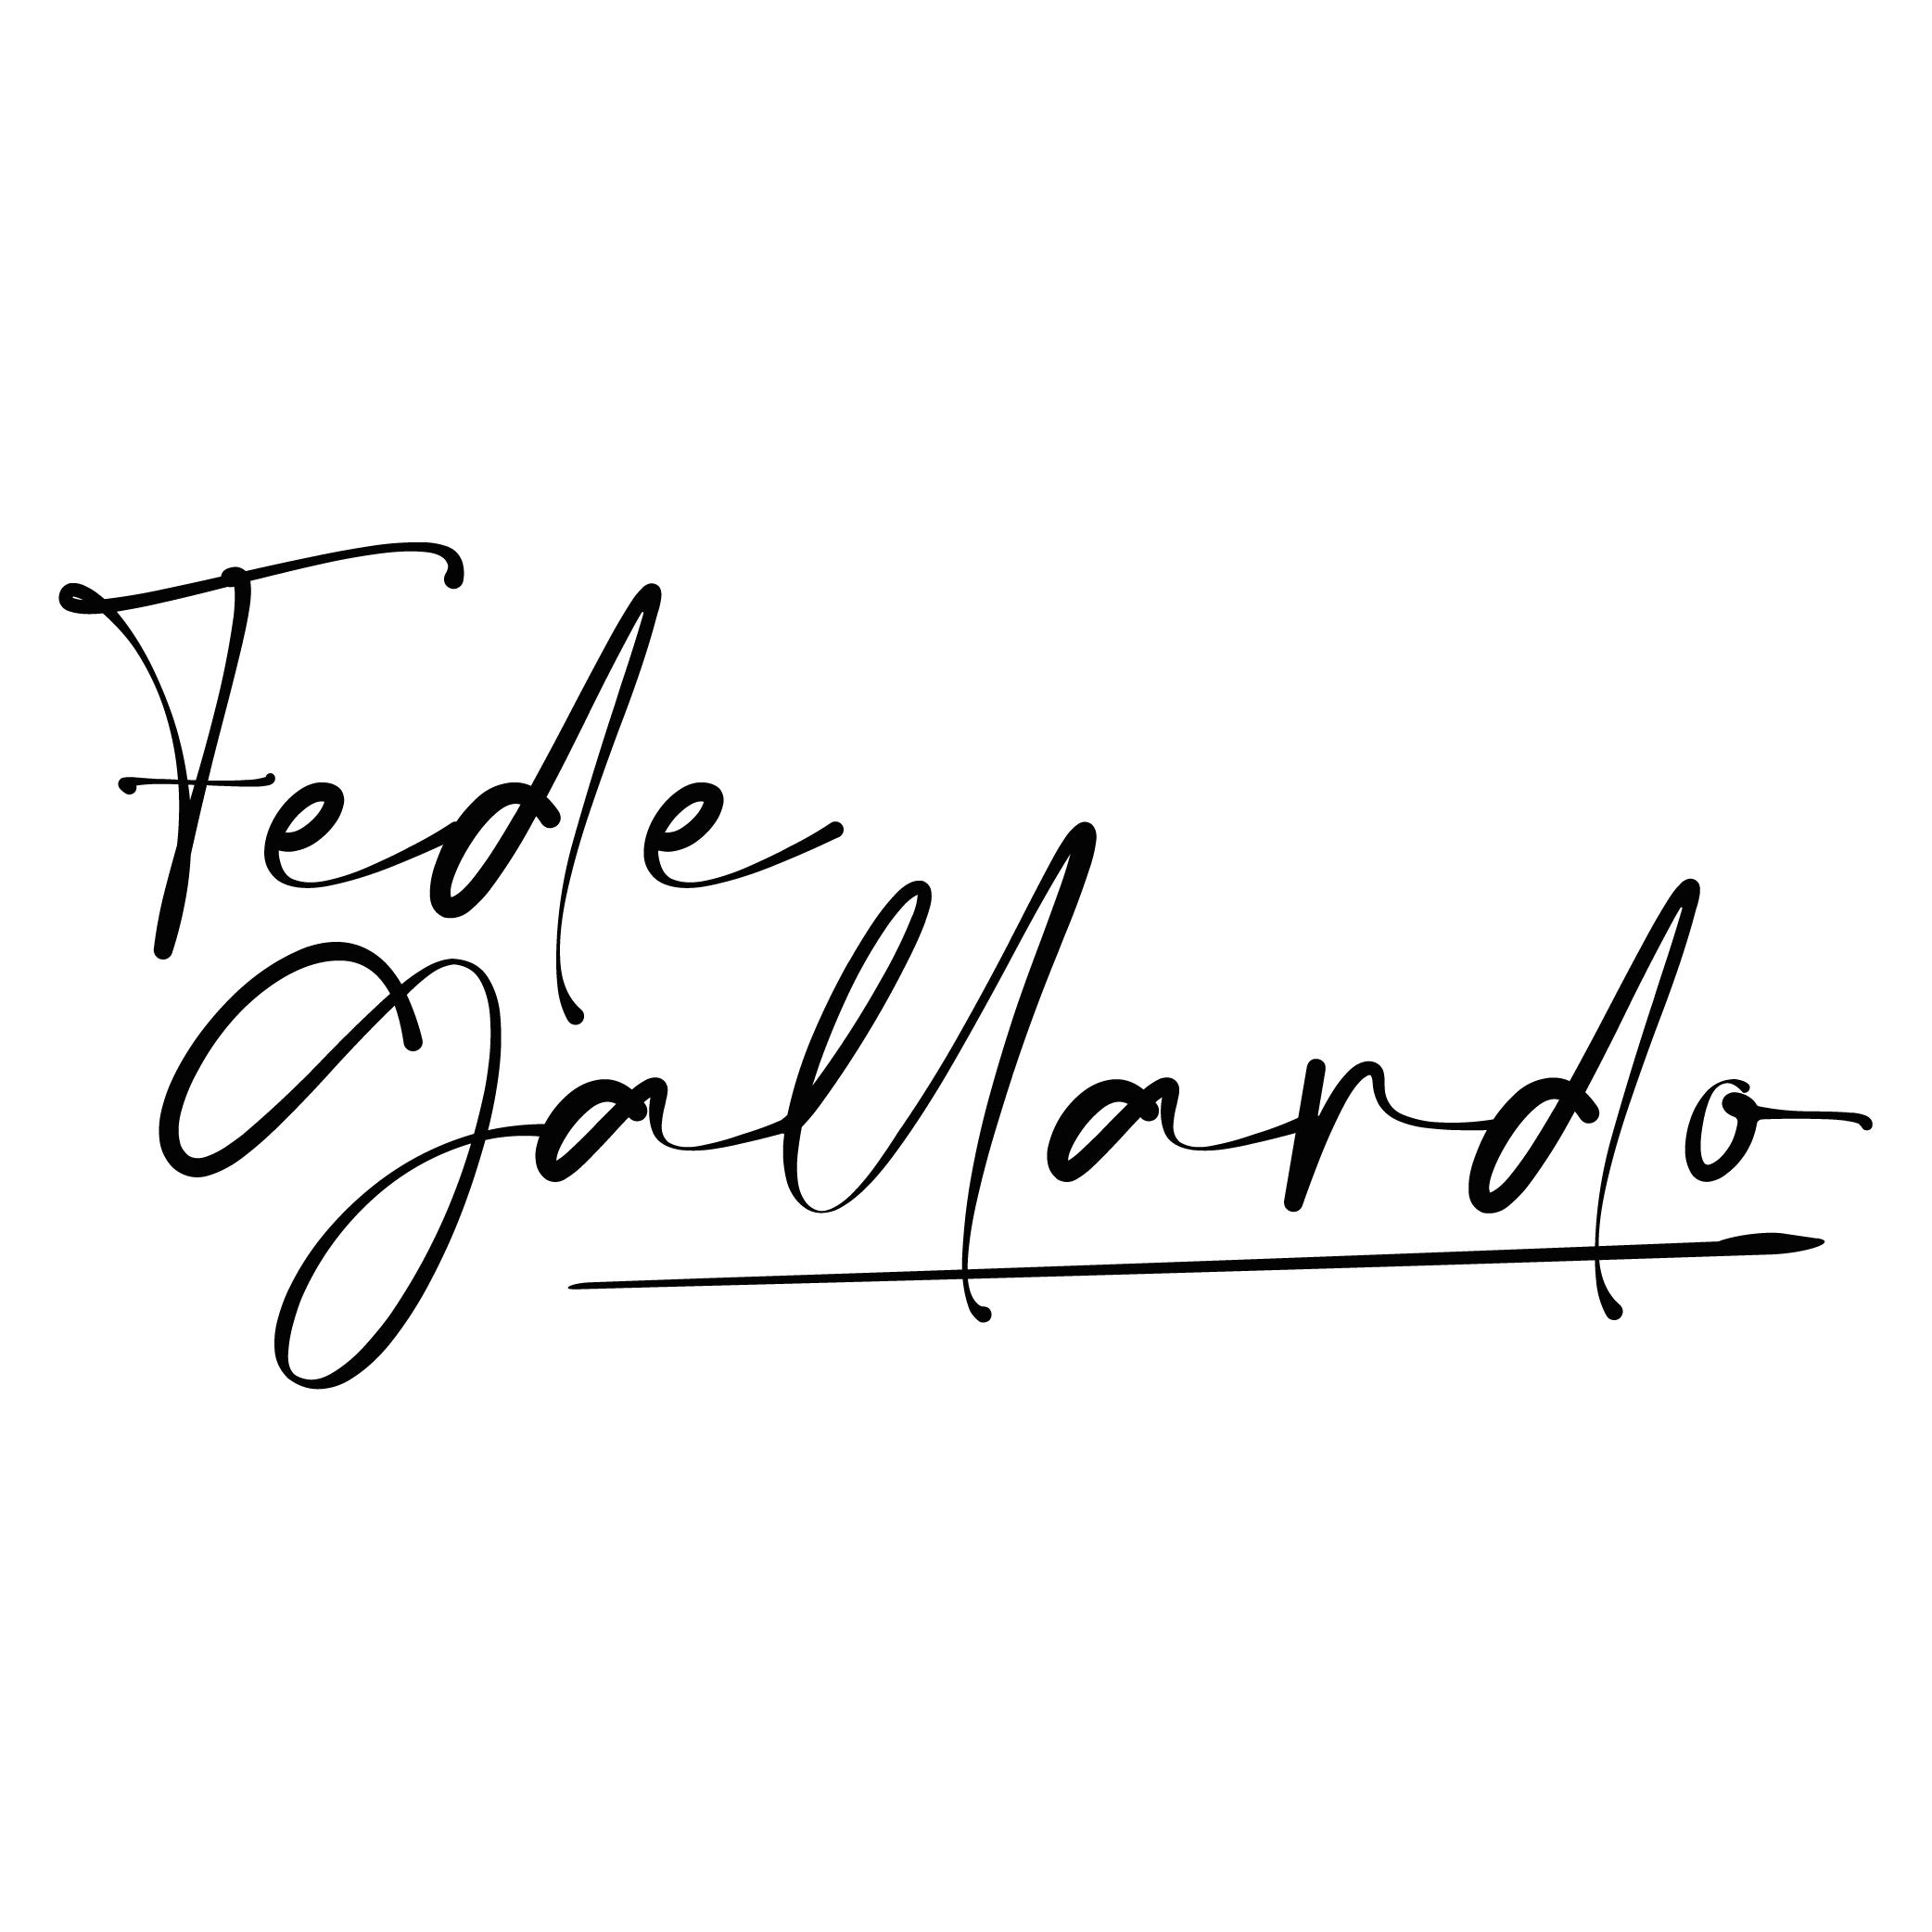 Fede Gallardo